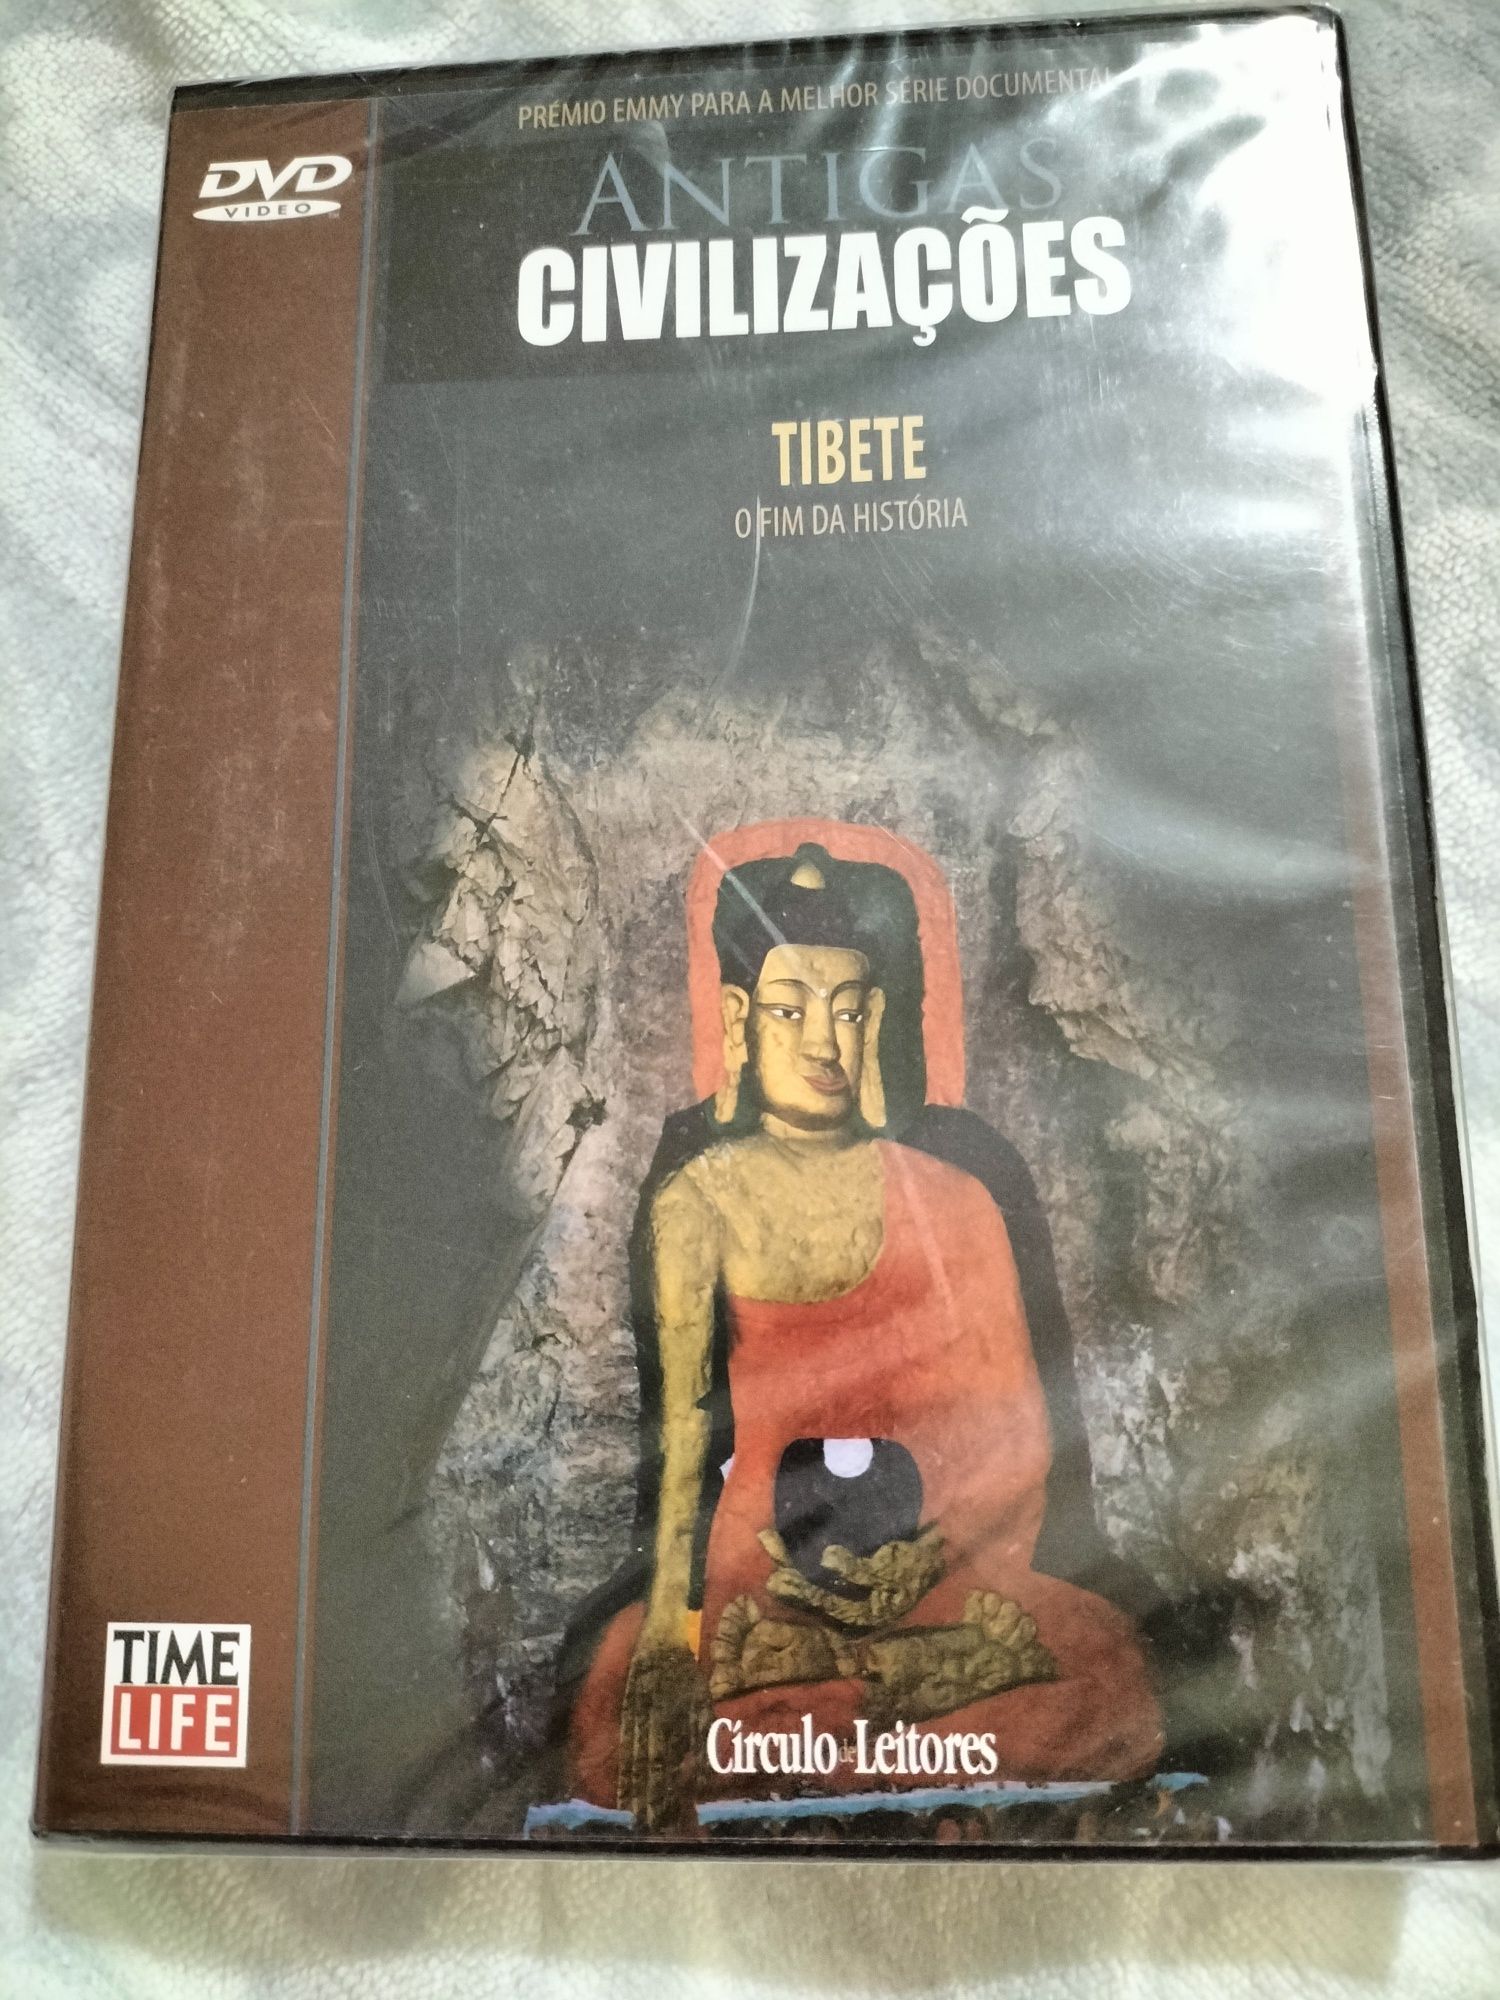 DVD - Antigas civilizações Tibete o fim da história) novo